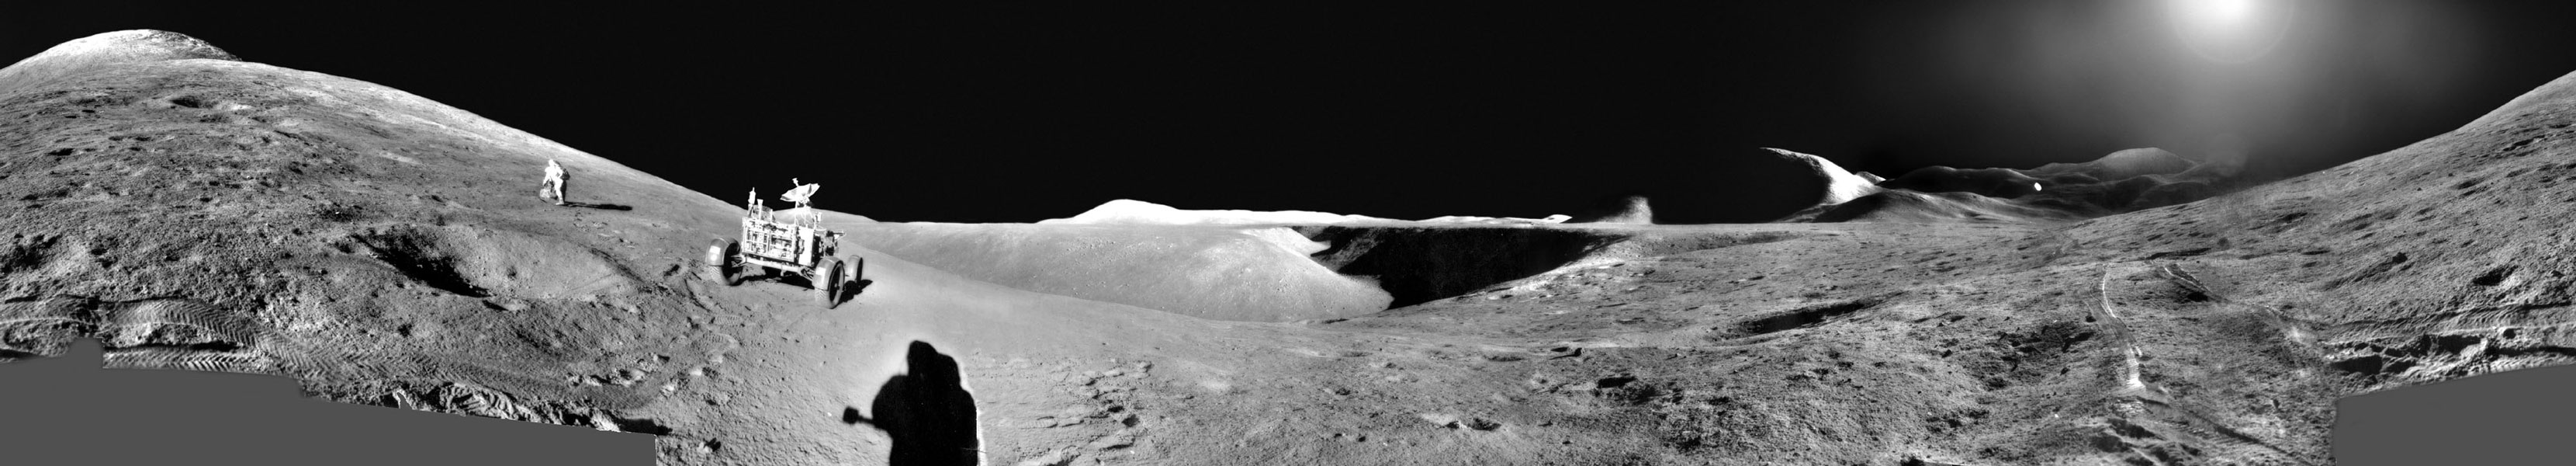 Mondlandschaft mit Mondfahrzeug und dem Schatten eines Astronauten.